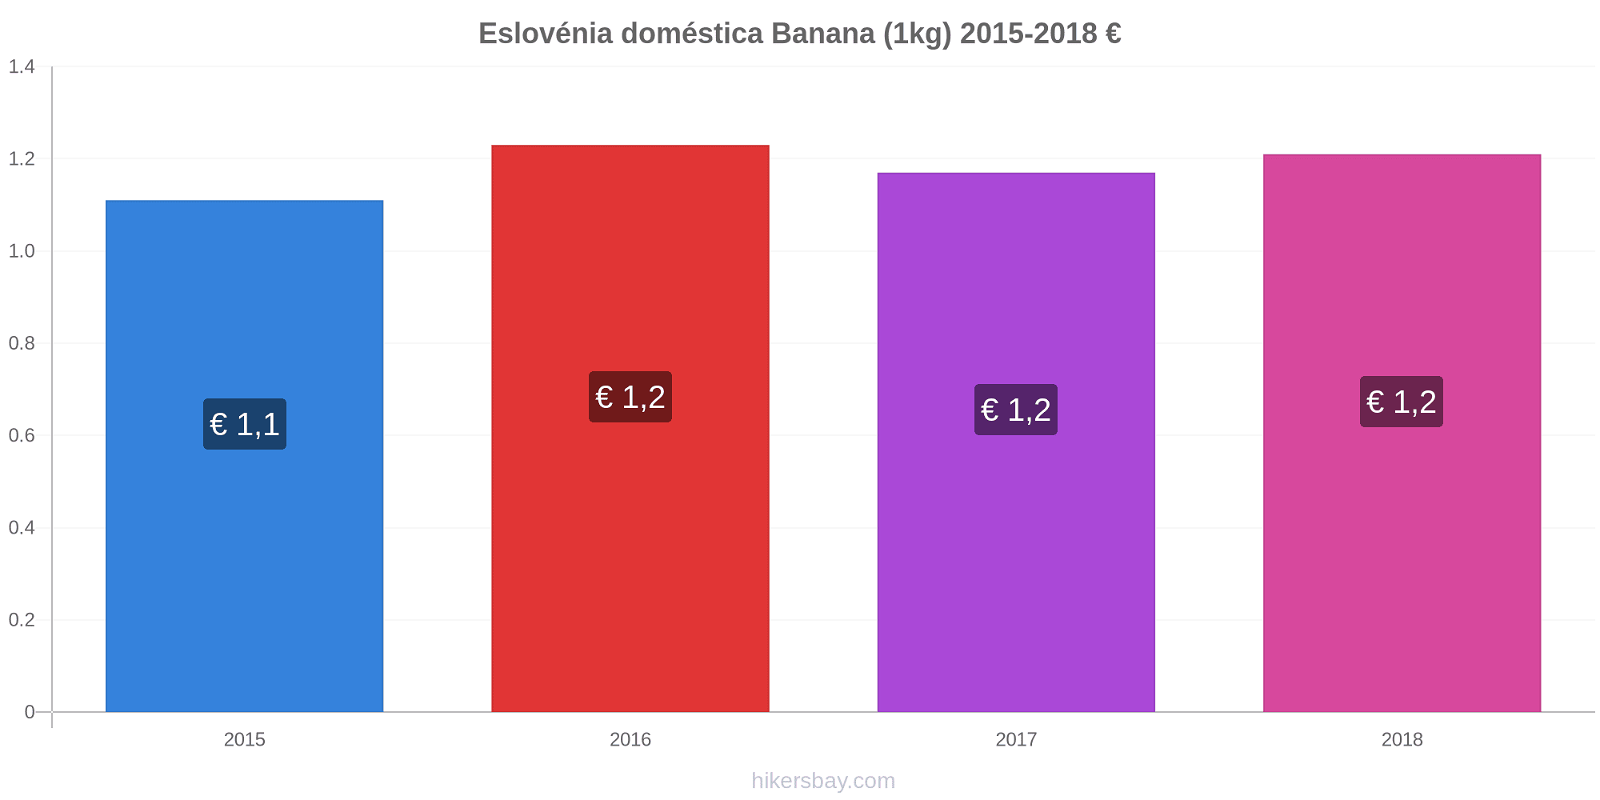 Eslovénia doméstica variação de preço Banana (1kg) hikersbay.com